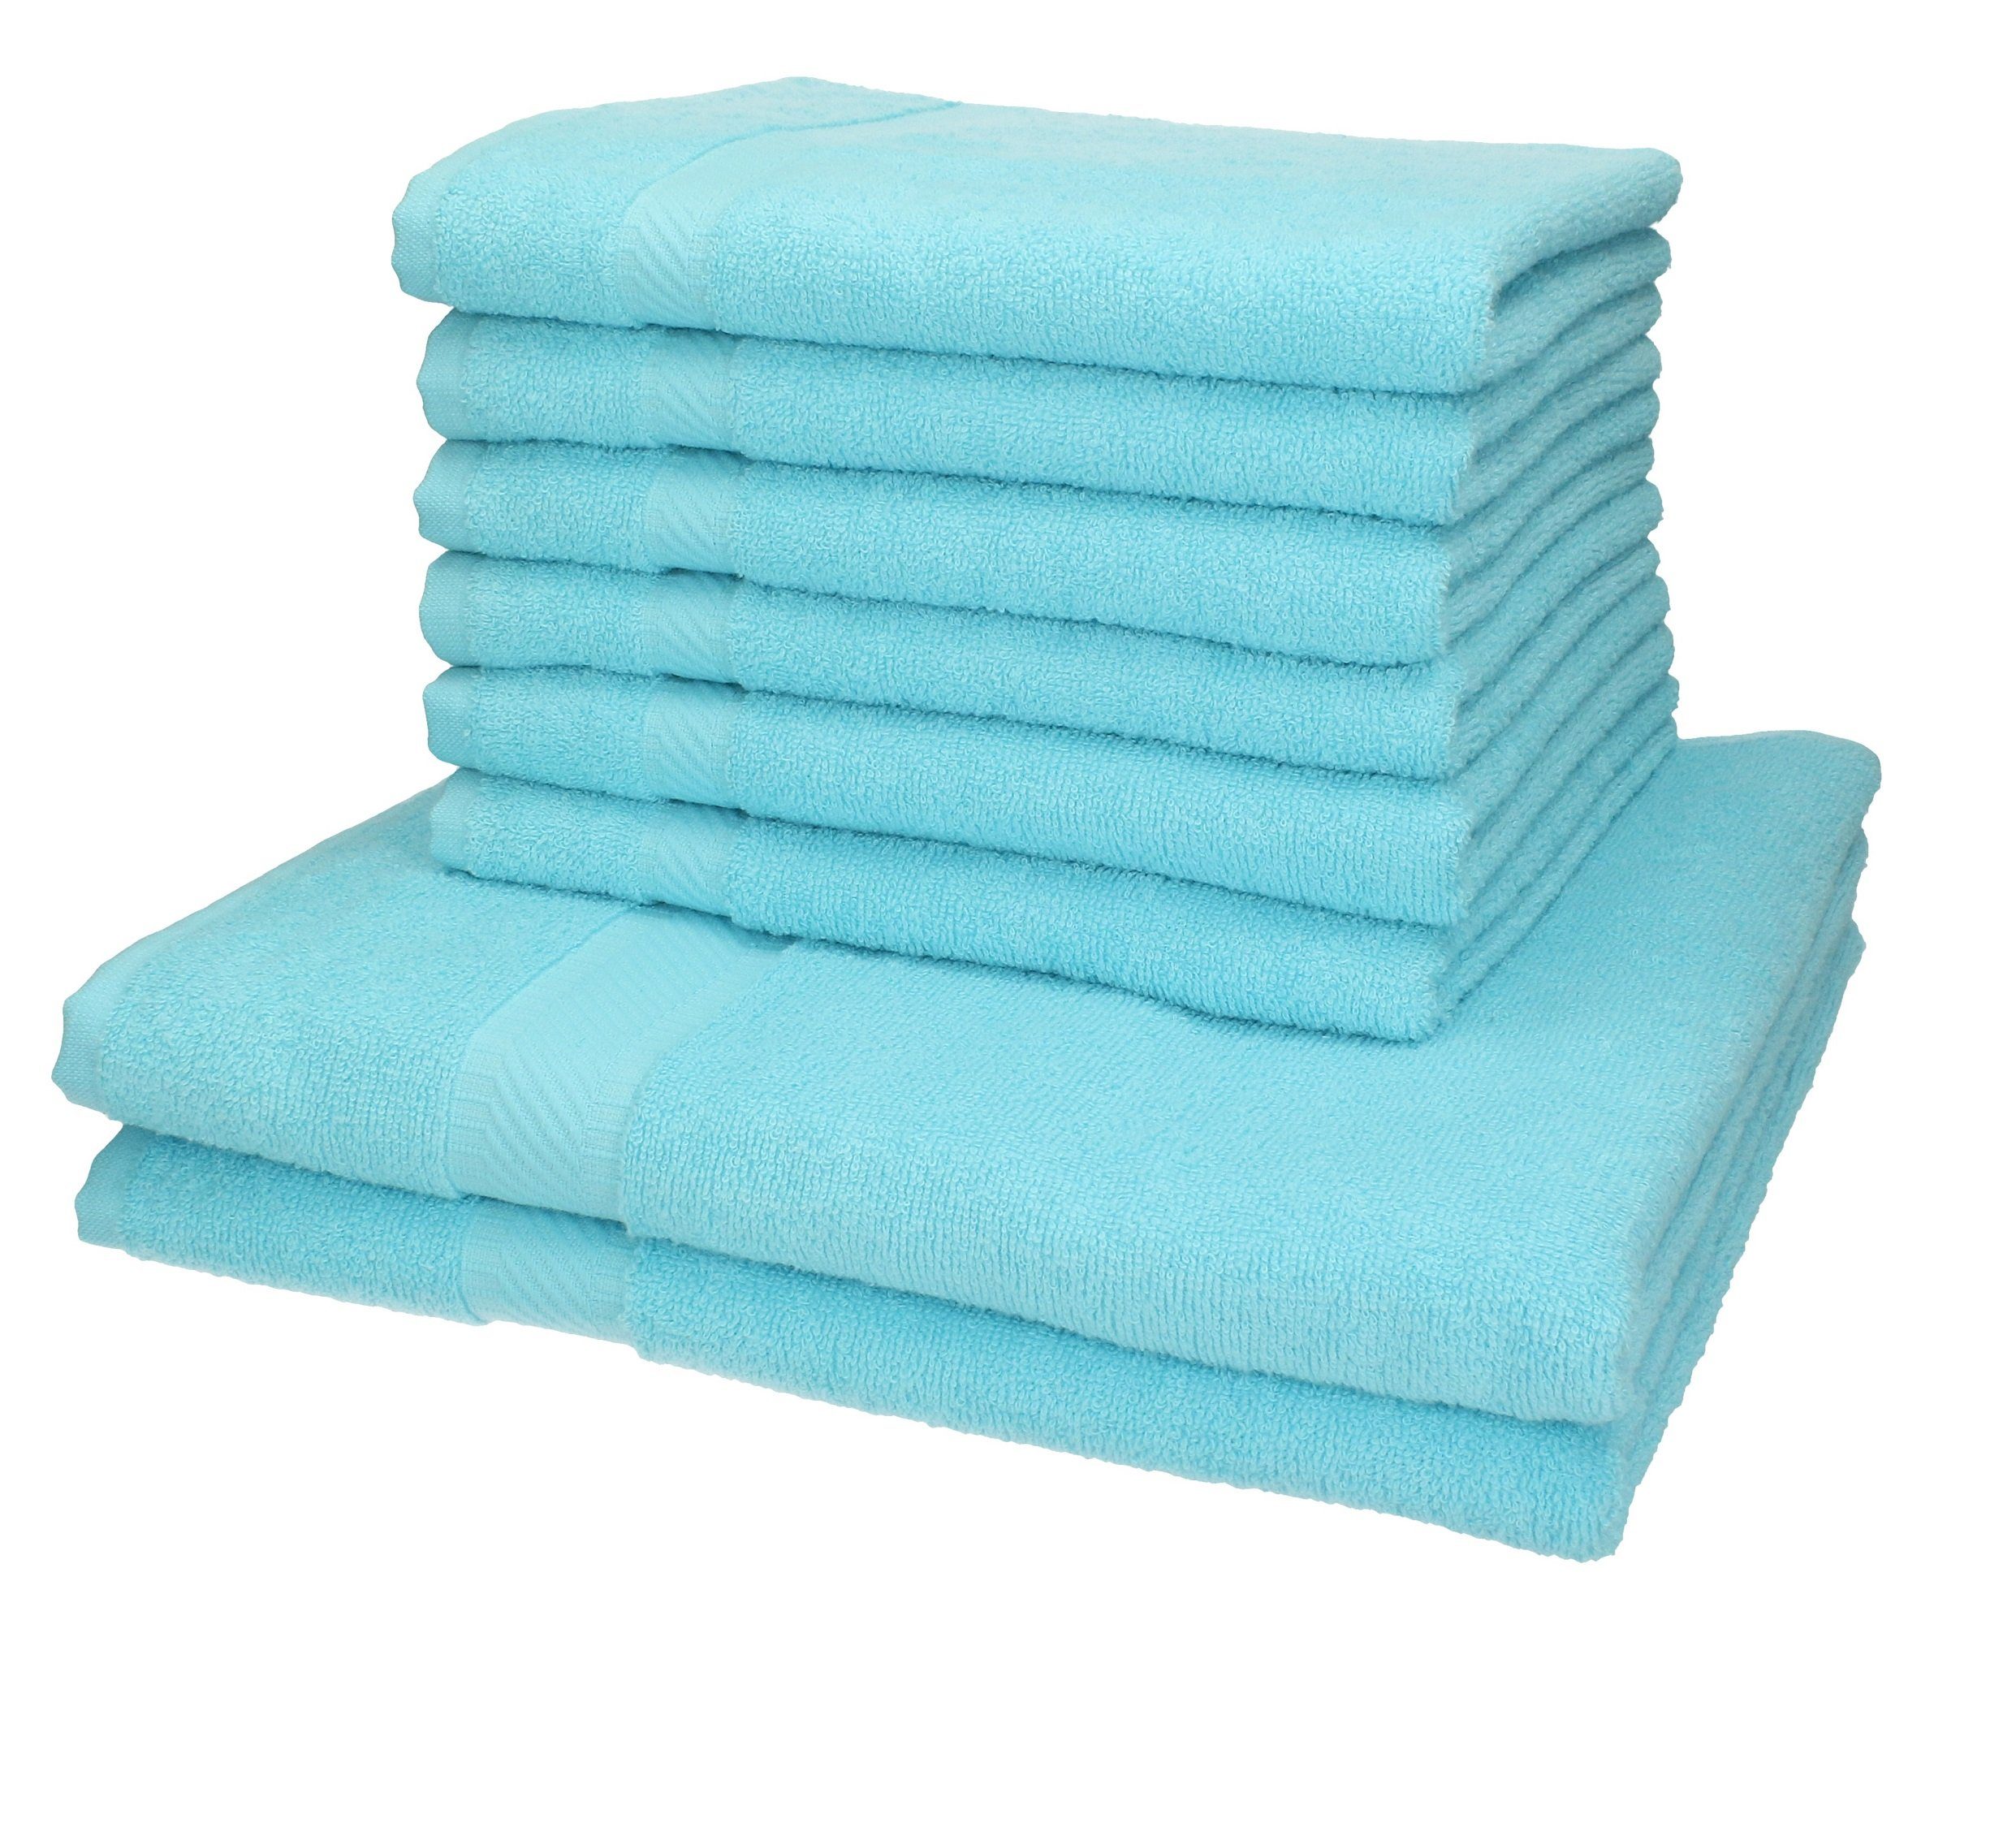 Betz Handtuch Set 8-tlg. Handtuch-Set Palermo 100% Baumwolle Farbe türkis, 100% Baumwolle | Handtuch-Sets